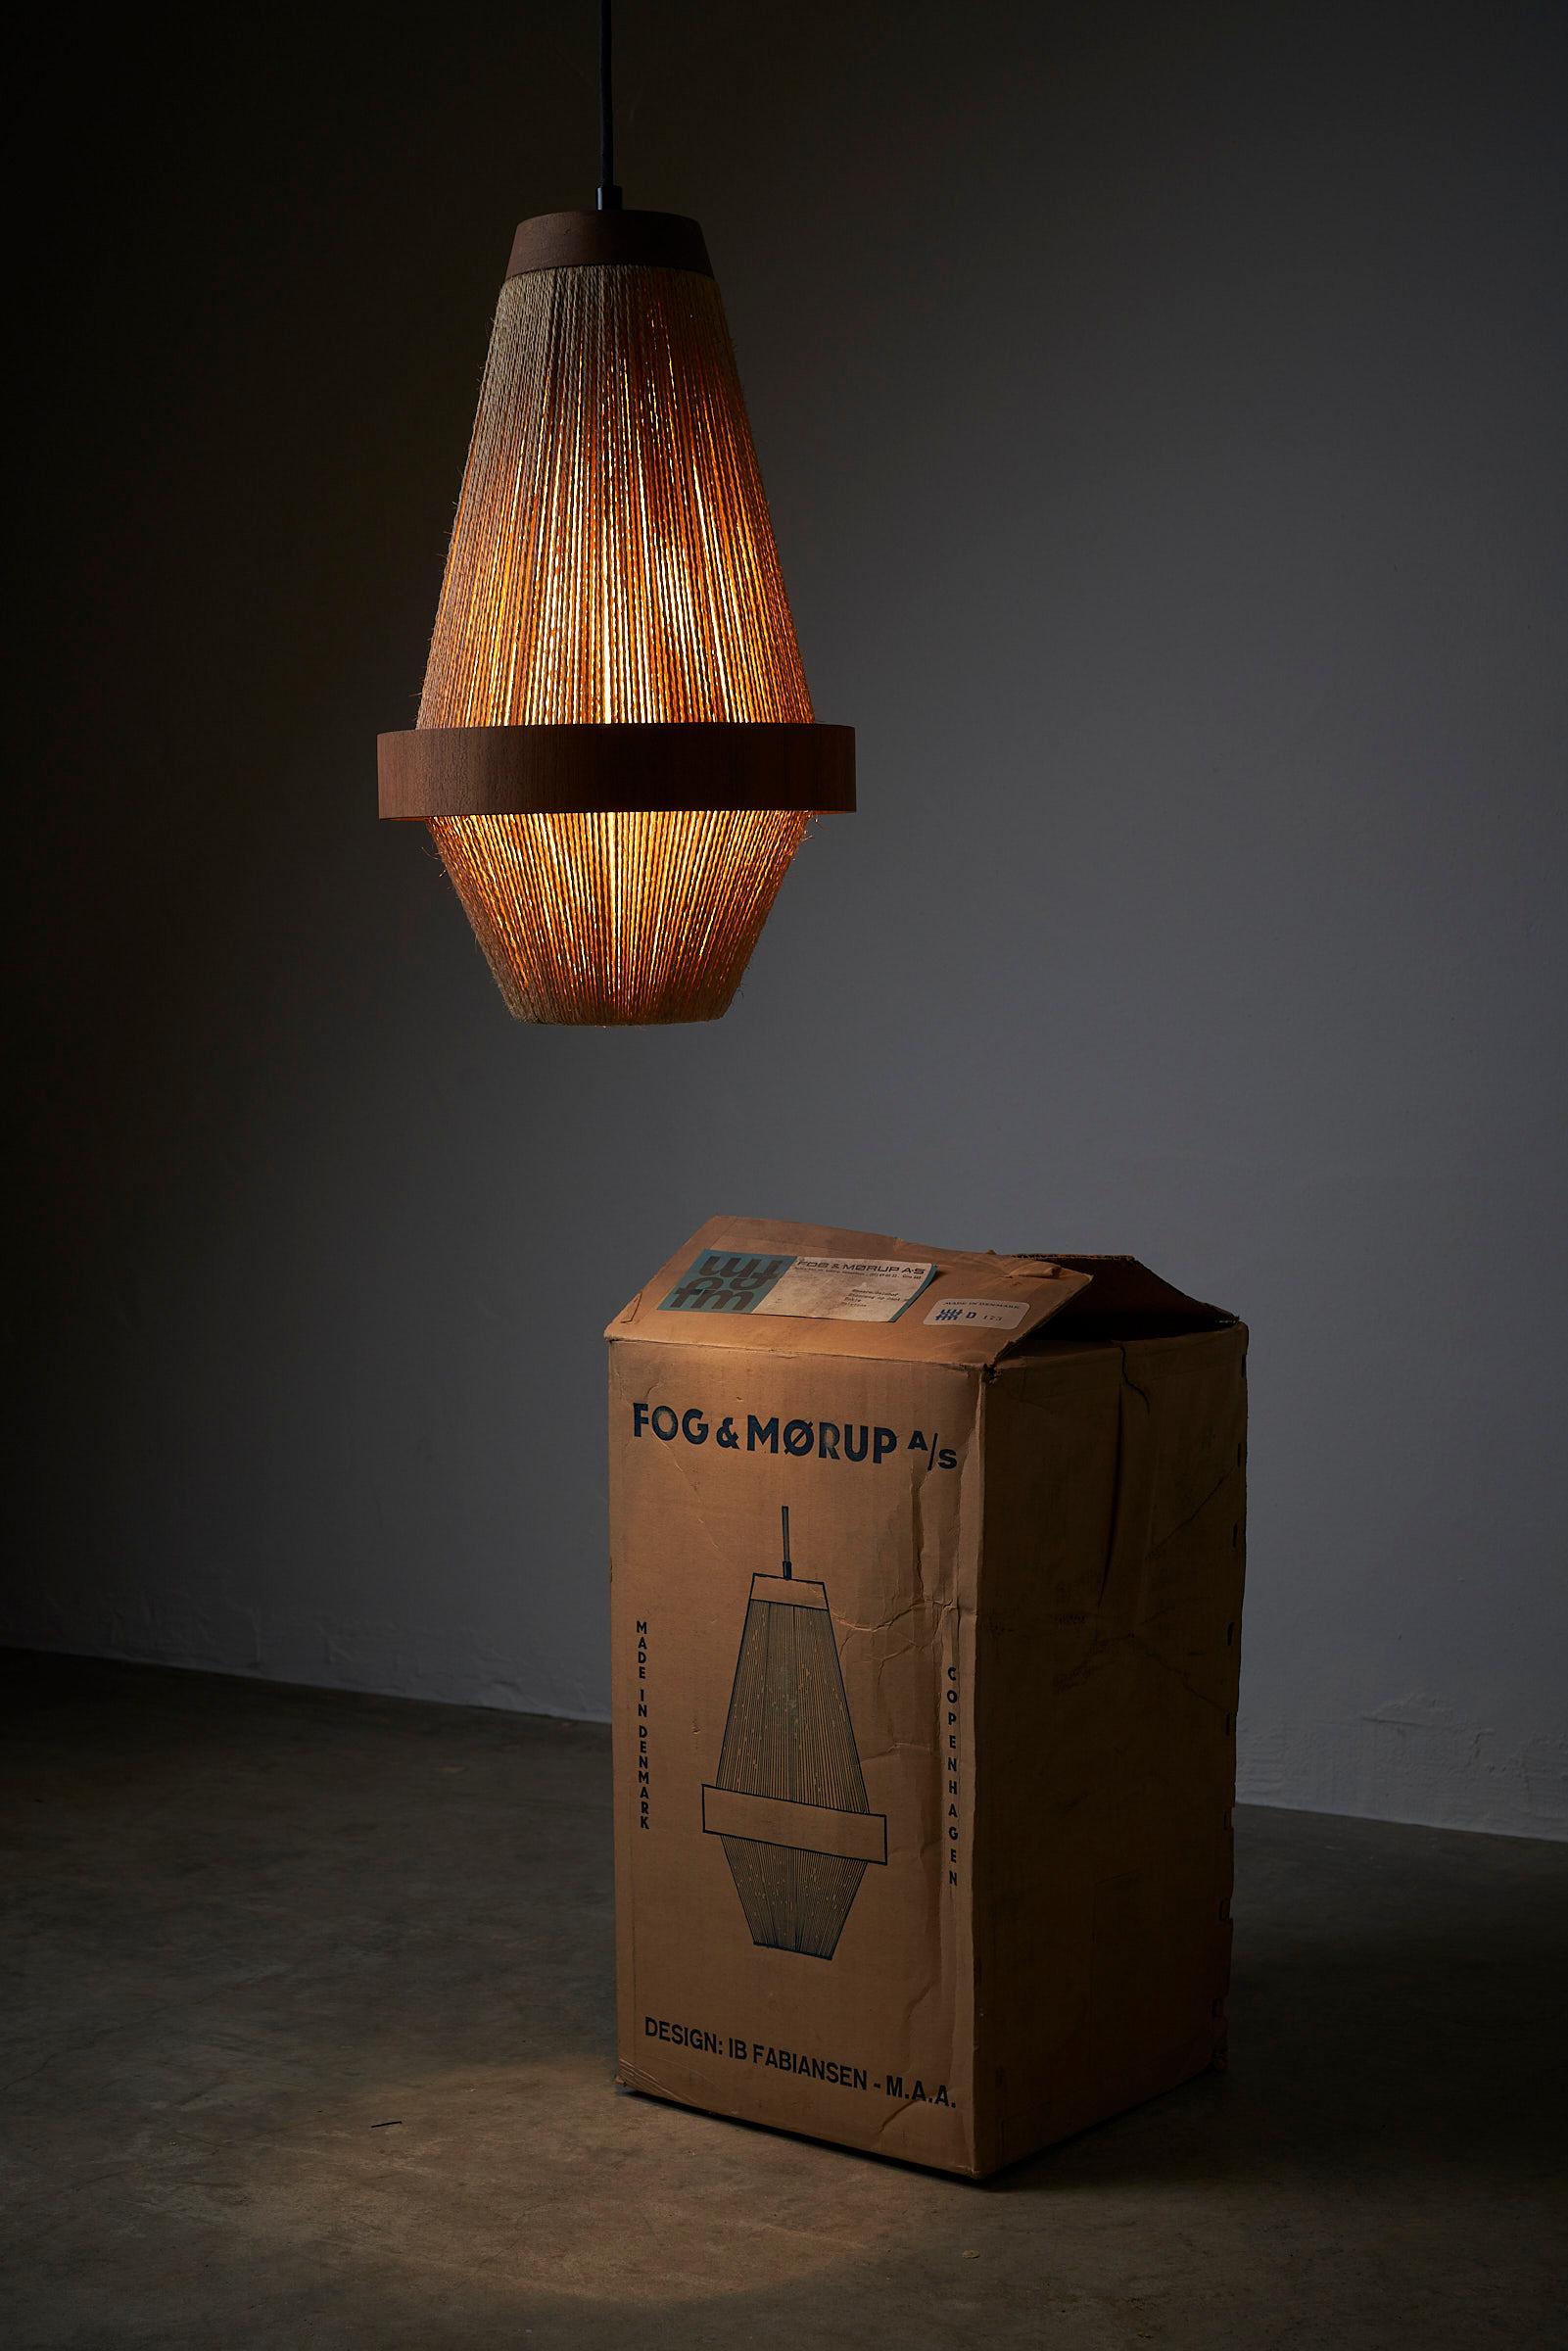 Voici l'exquise lampe suspendue conçue par IB Fabiansen pour Fog&Mørup, un joyau du design danois qui associe magnifiquement le bois de teck et la corde pour créer une pièce d'éclairage vraiment captivante.

Fabriquée avec une attention méticuleuse